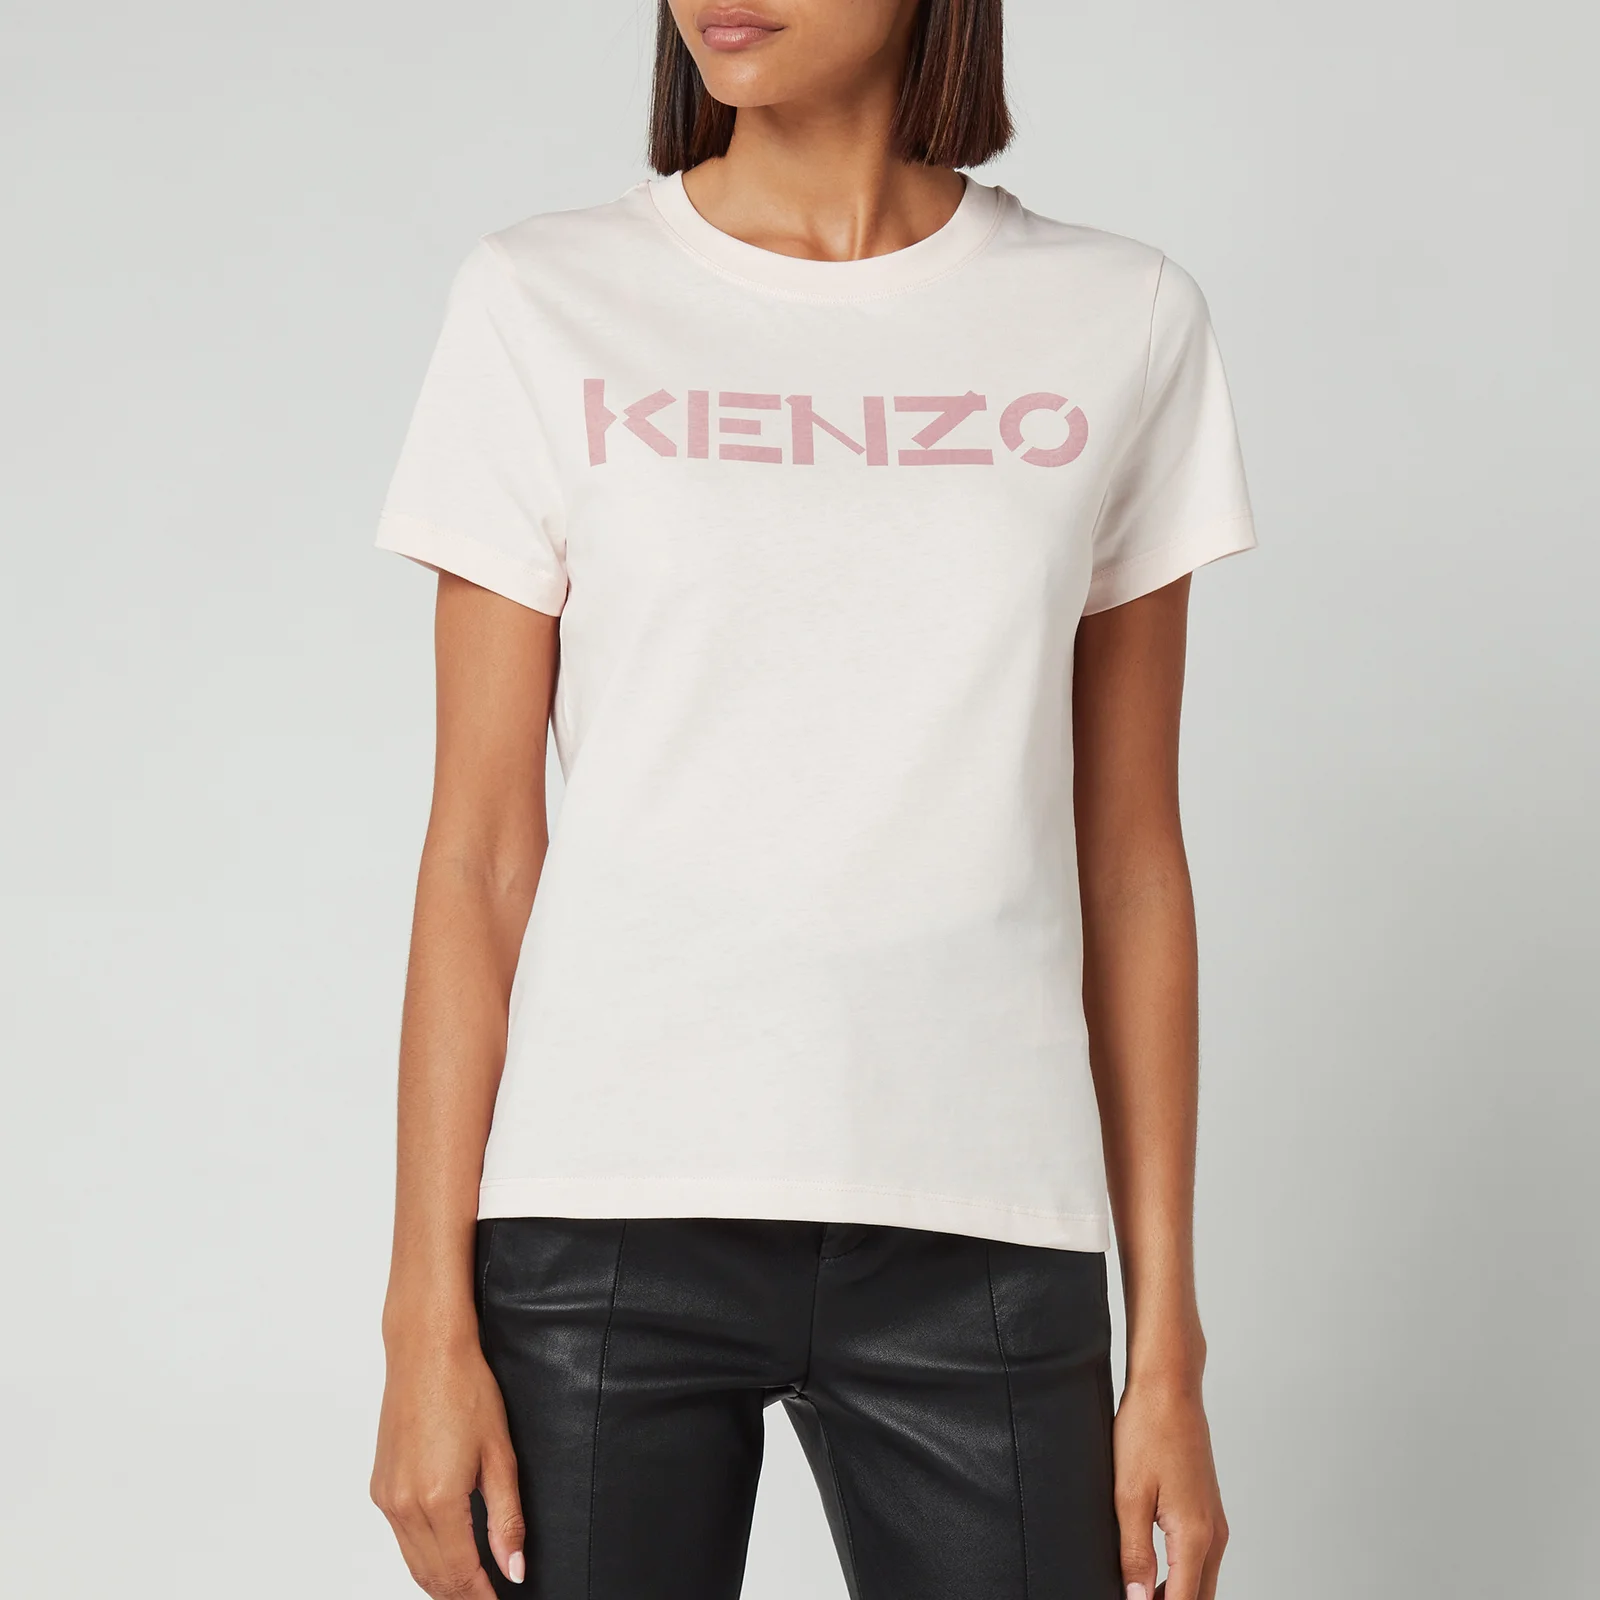 KENZO Women's Logo Classic T-Shirt - Faded Pink Image 1